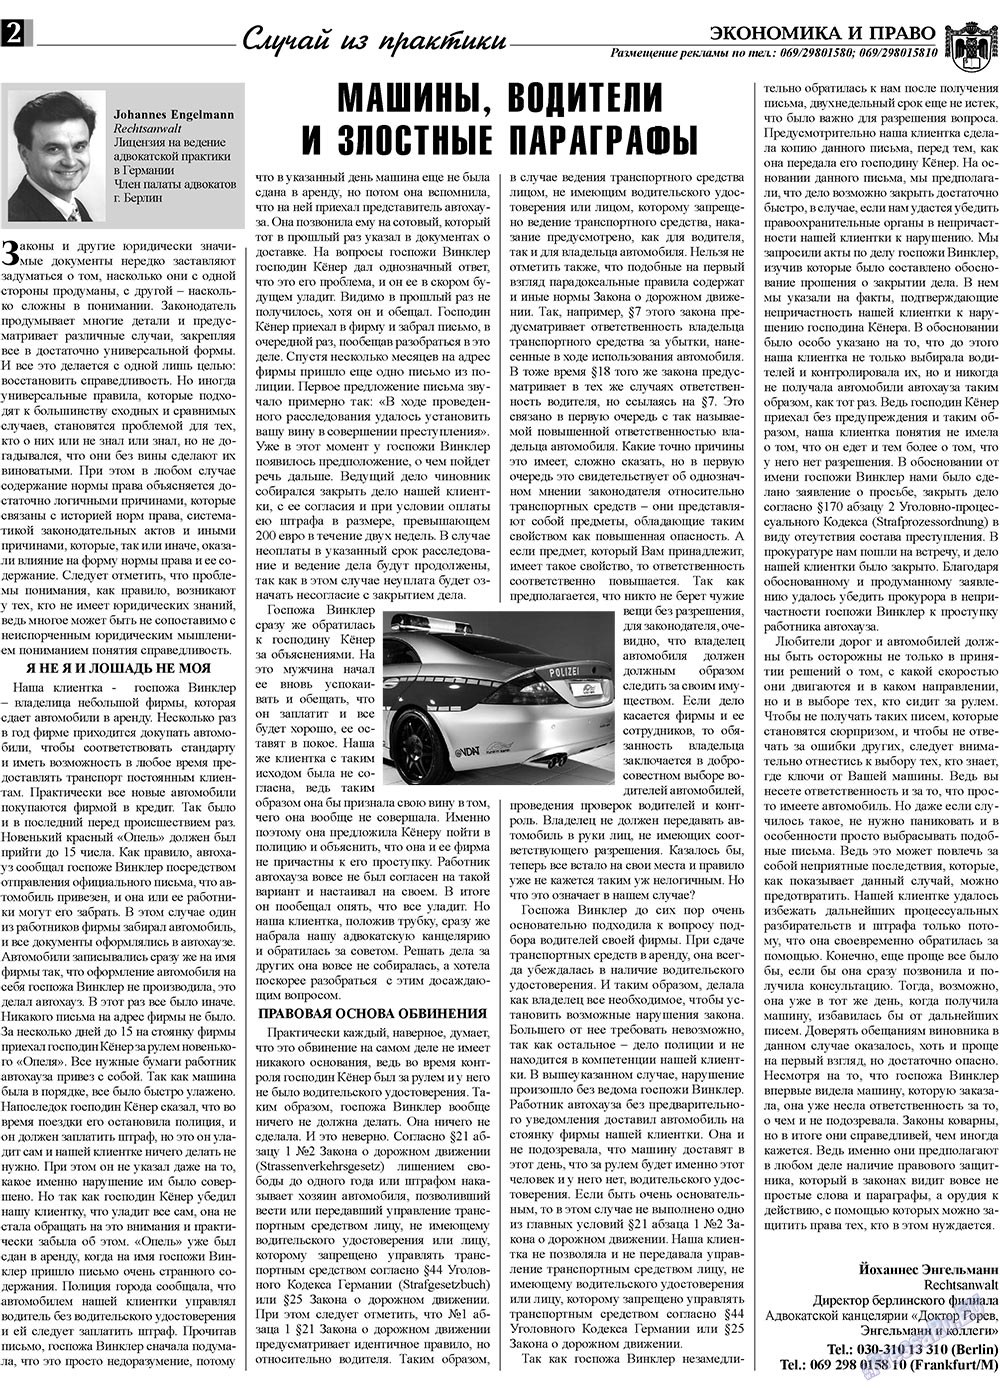 Экономика и право, газета. 2009 №11 стр.2